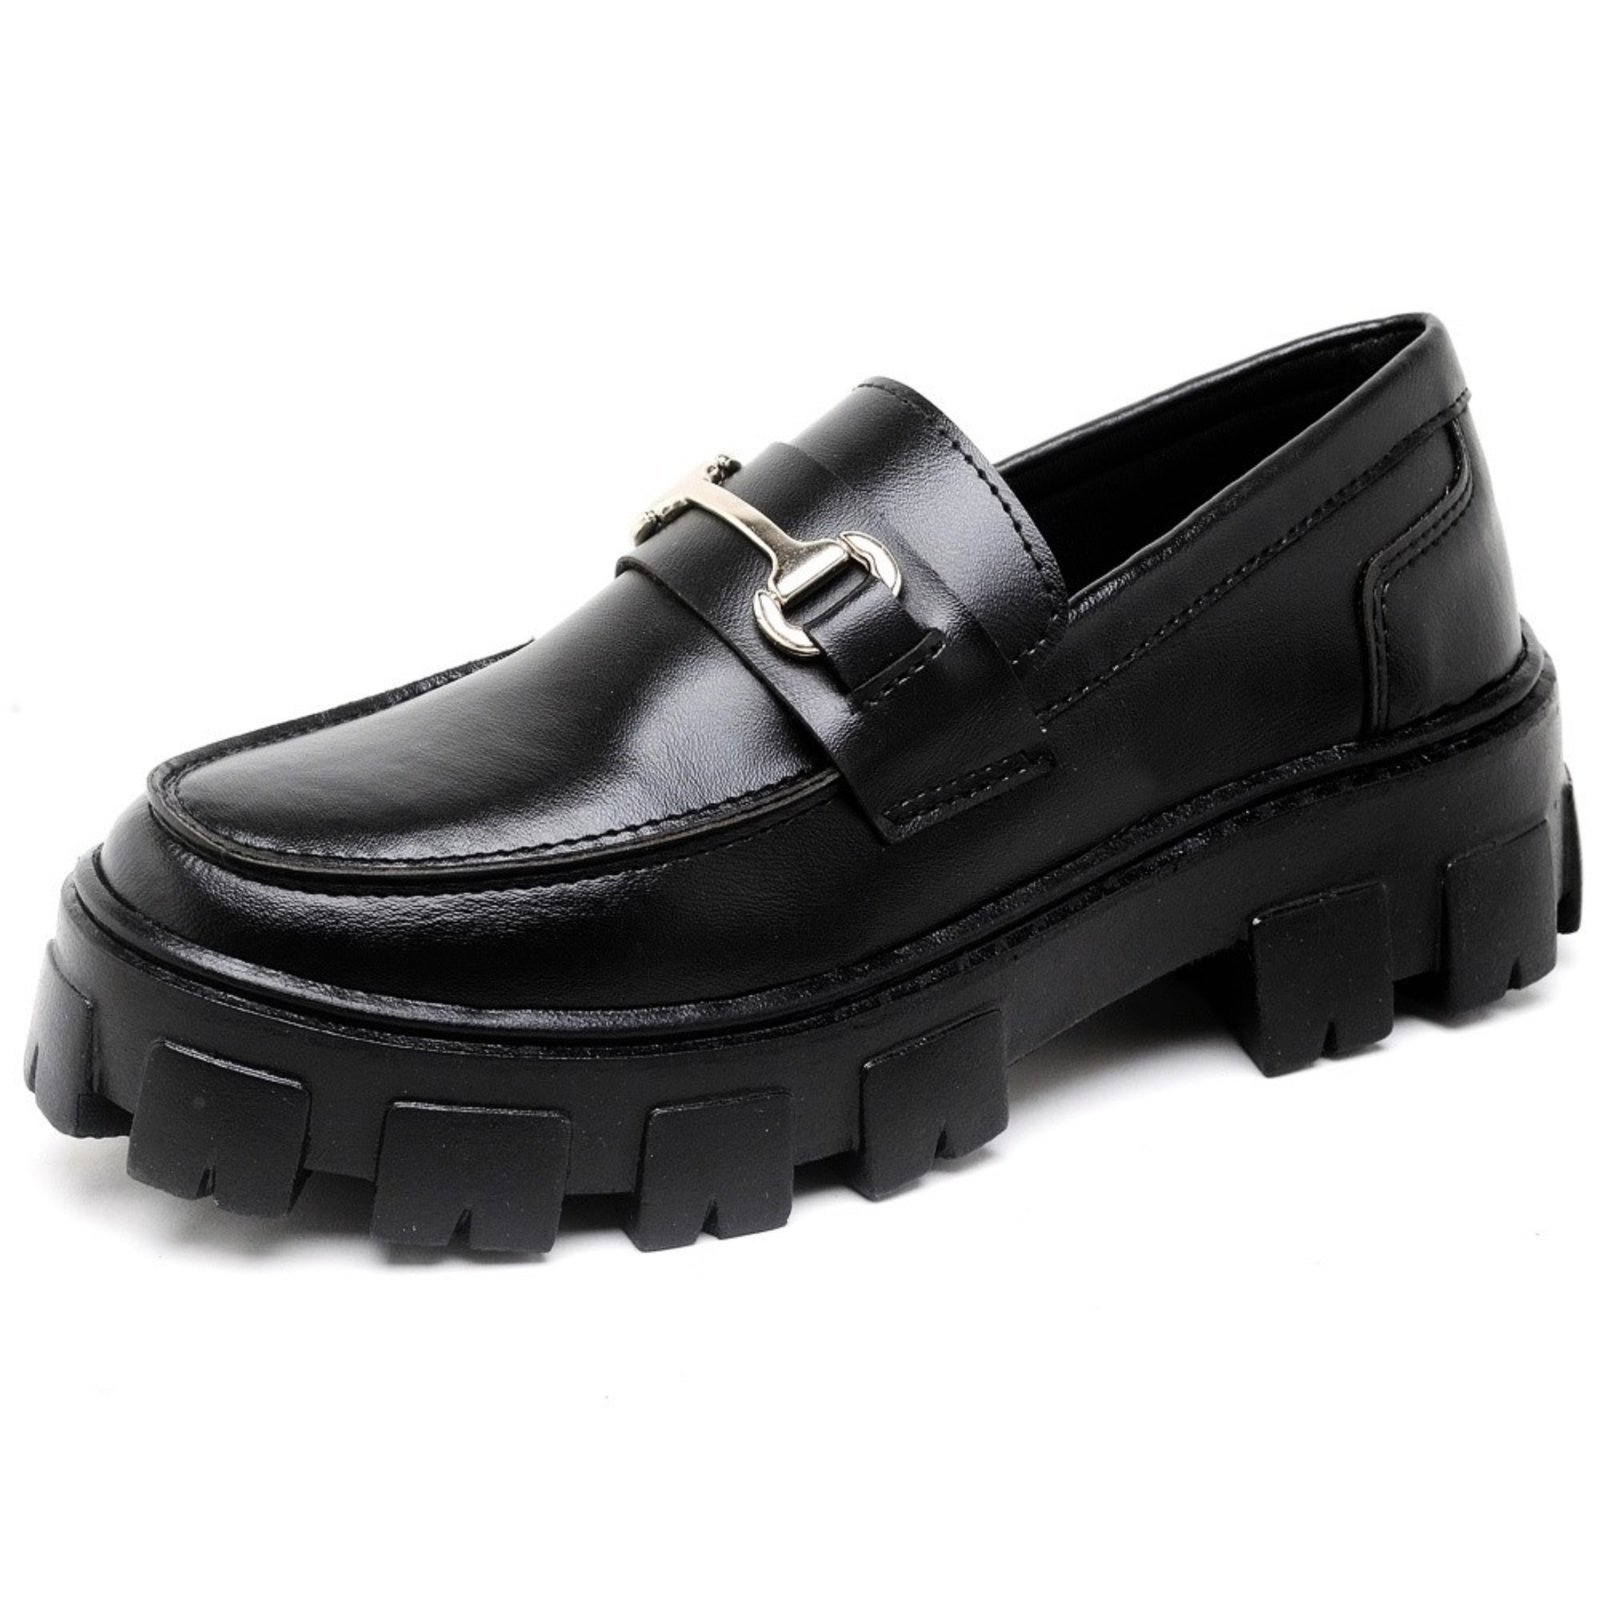 Sapatos Pretos Homem Size 39